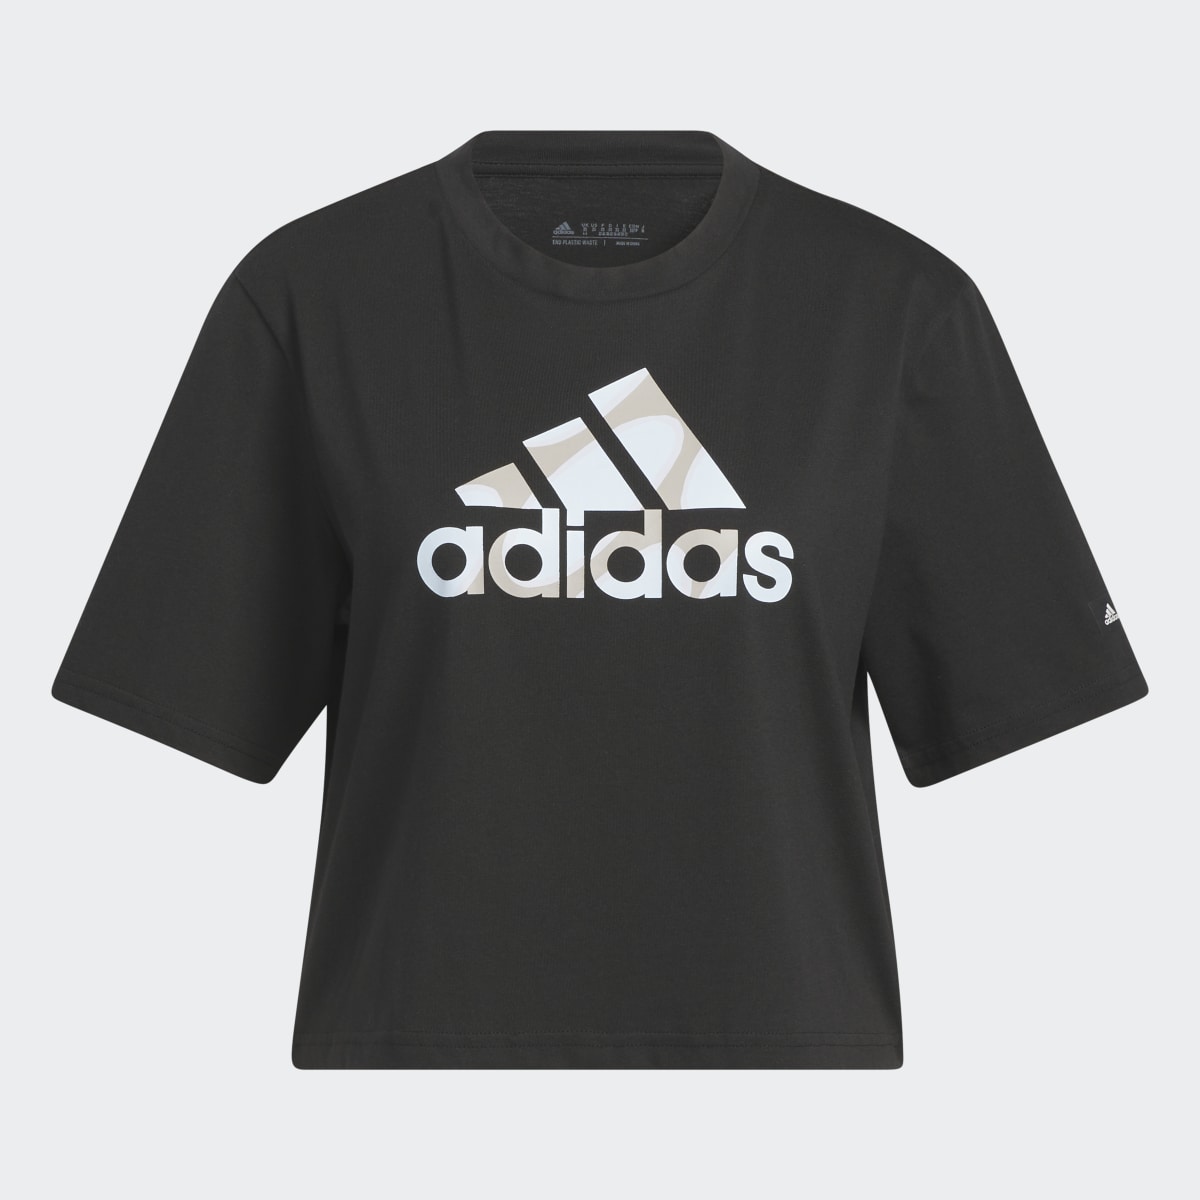 Adidas T-shirt Marimekko Crop. 5